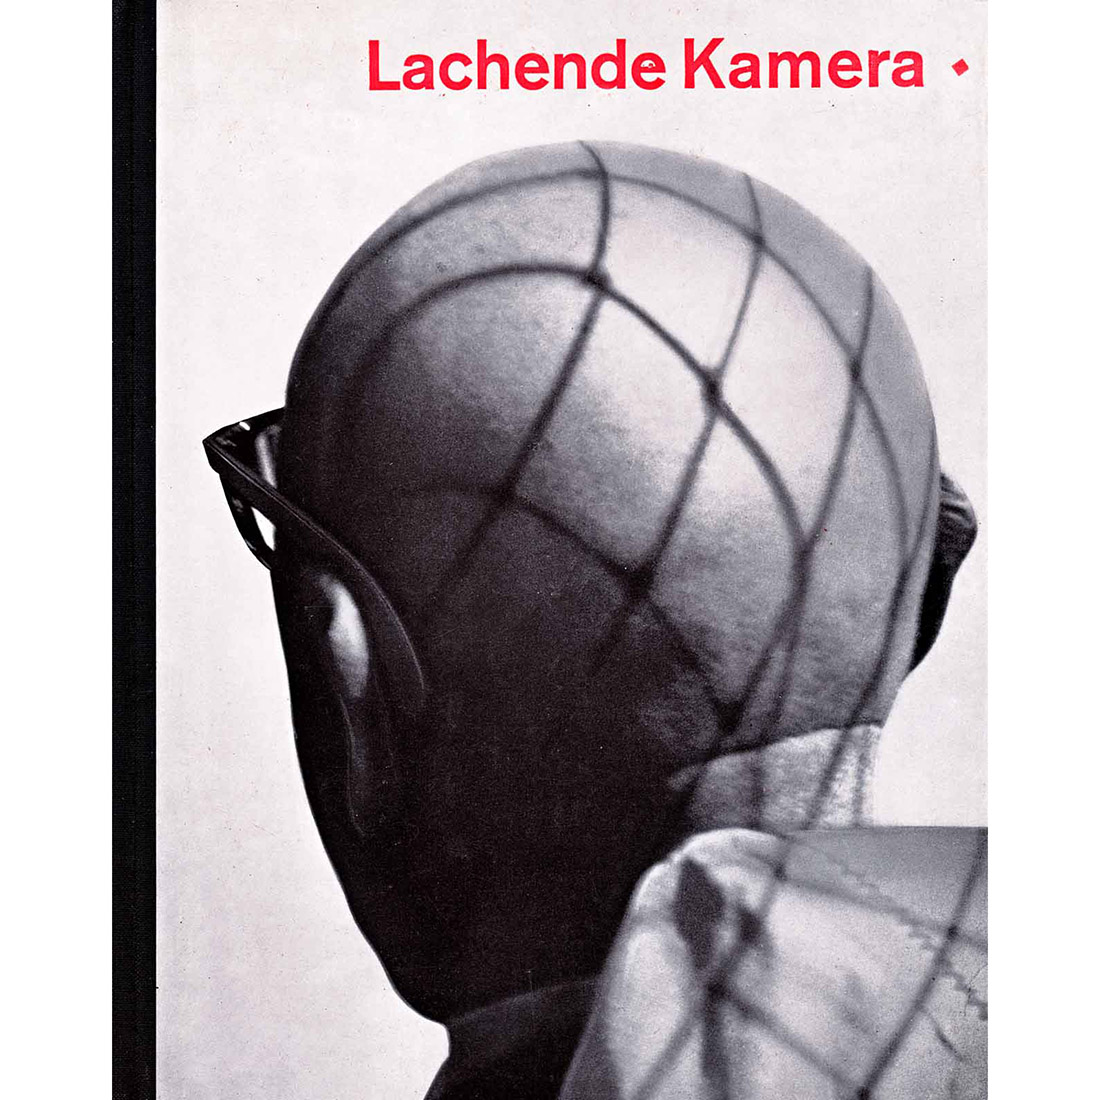 Lachende Kamera - Hanns Reich - 1959